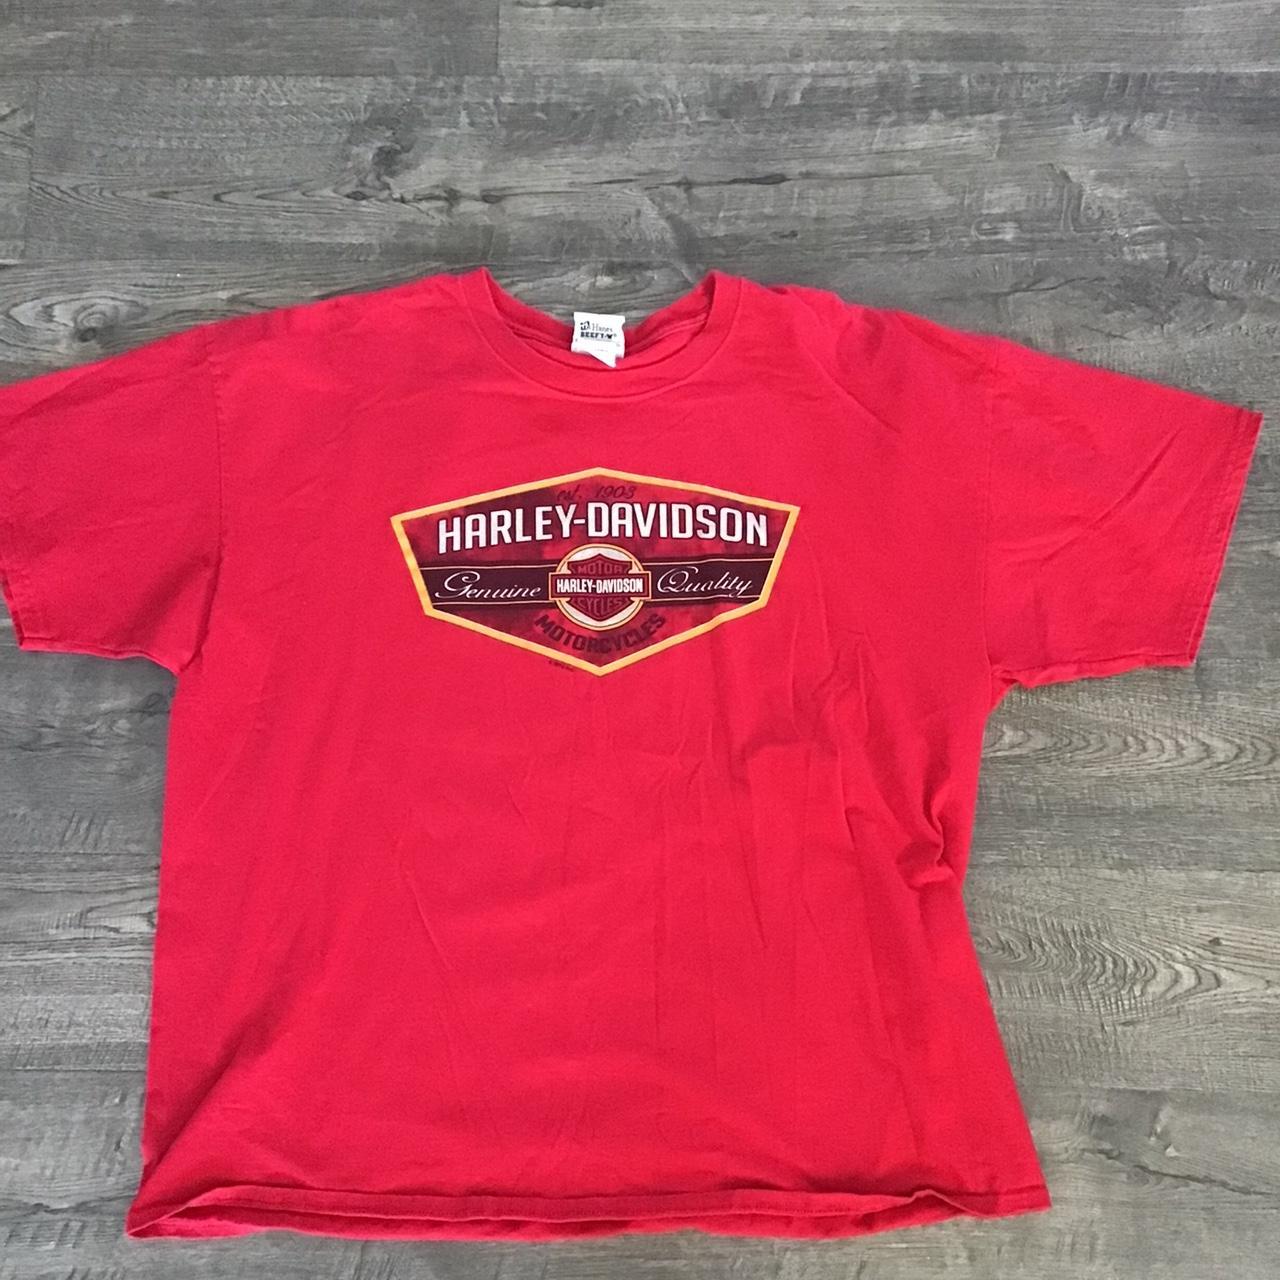 Harley Davidson Men's Red T-shirt | Depop